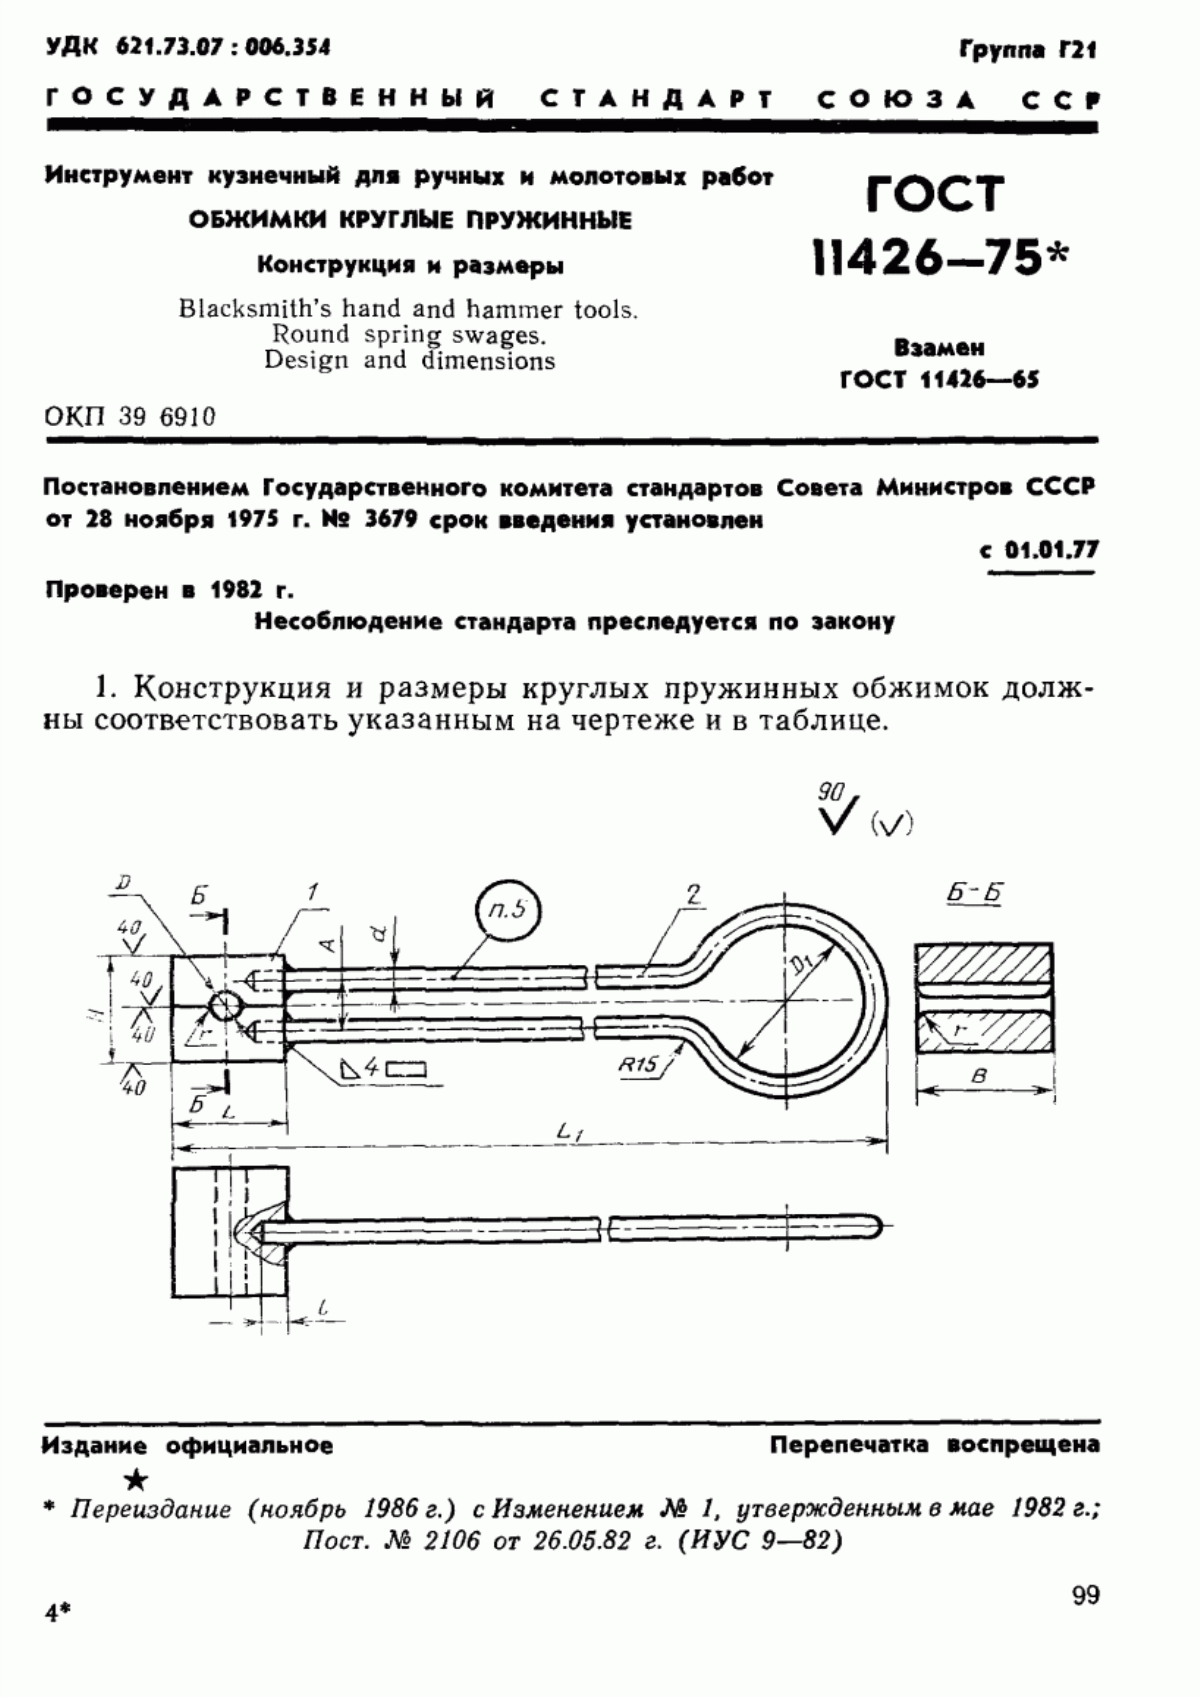 ГОСТ 11426-75 Инструмент кузнечный для ручных и молотовых работ. Обжимки круглые пружинные. Конструкция и размеры